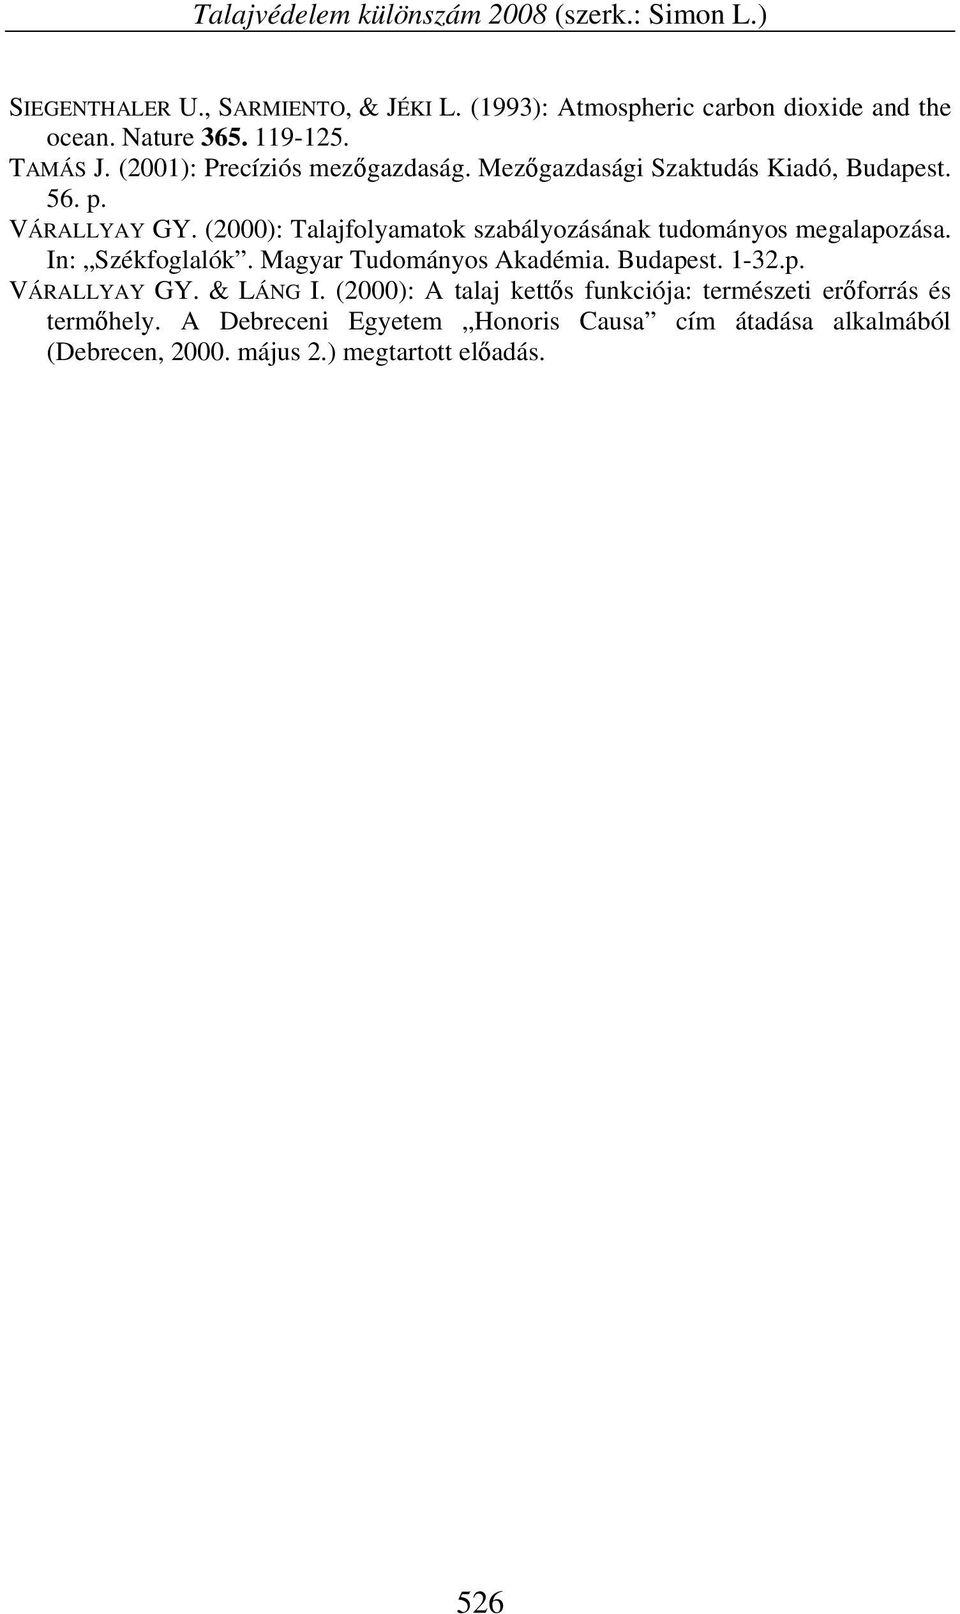 (2000): Talajfolyamatok szabályozásának tudományos megalapozása. In: Székfoglalók. Magyar Tudományos Akadémia. Budapest. 1-32.p. VÁRALLYAY GY.